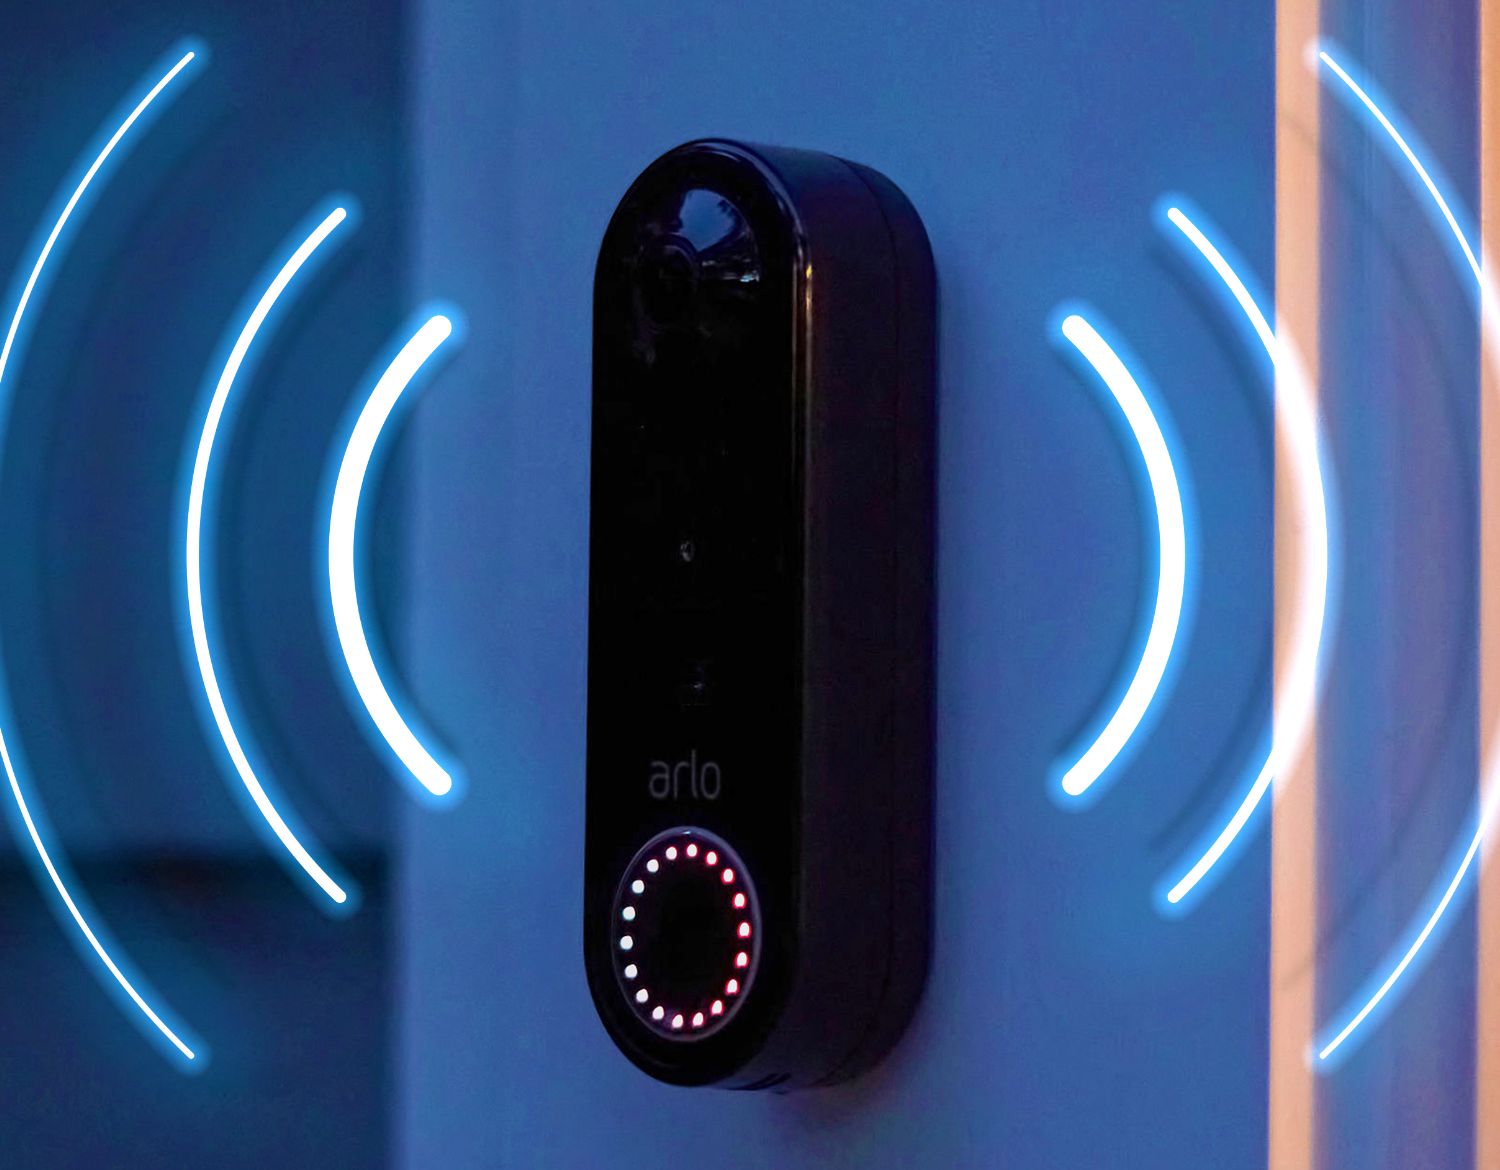 Et bilde illustrerer en Arlo-trådløs videodørklokkesirene som lyder om natten